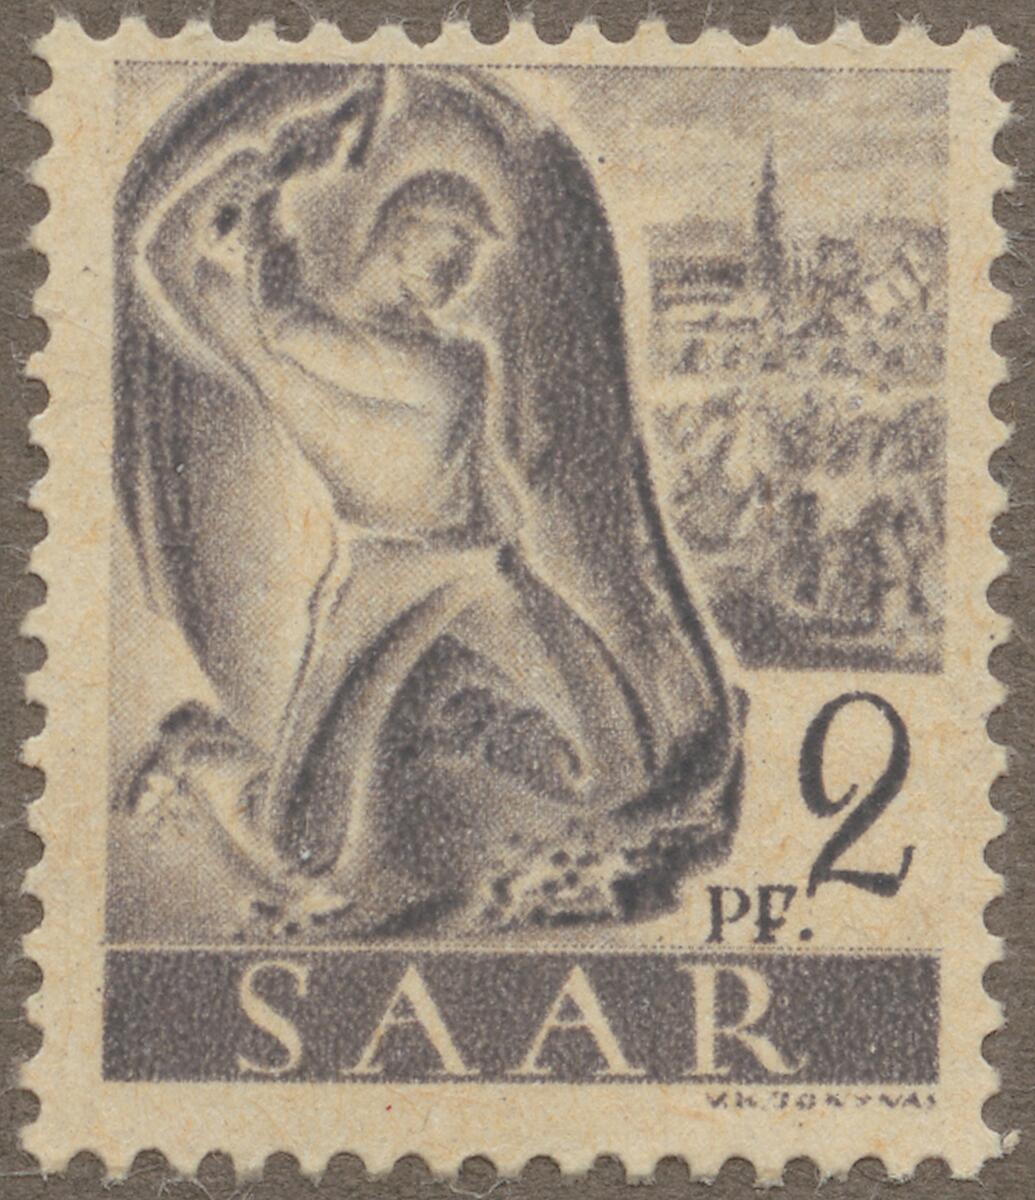 Frimärke ur Gösta Bodmans filatelistiska motivsamling, påbörjad 1950.
Frimärke från Saar, 1947. Motiv av Kolgruvearbetare i Saar.